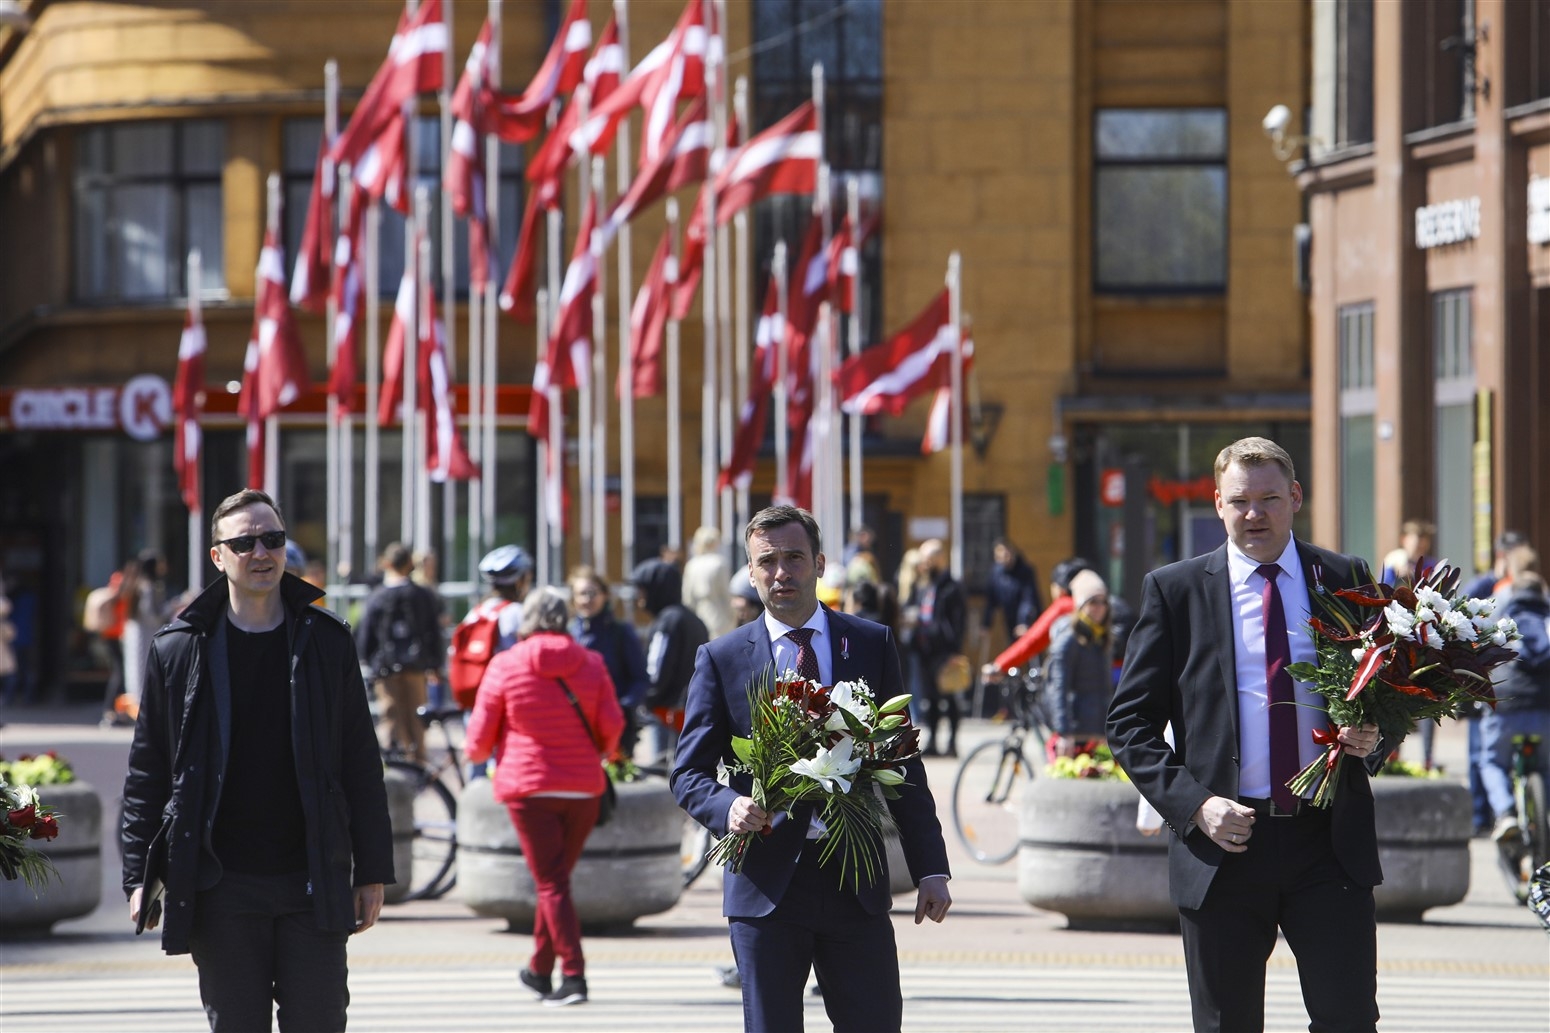 Rīgas domes vadība noliek ziedus pie brīvības pieminekļa